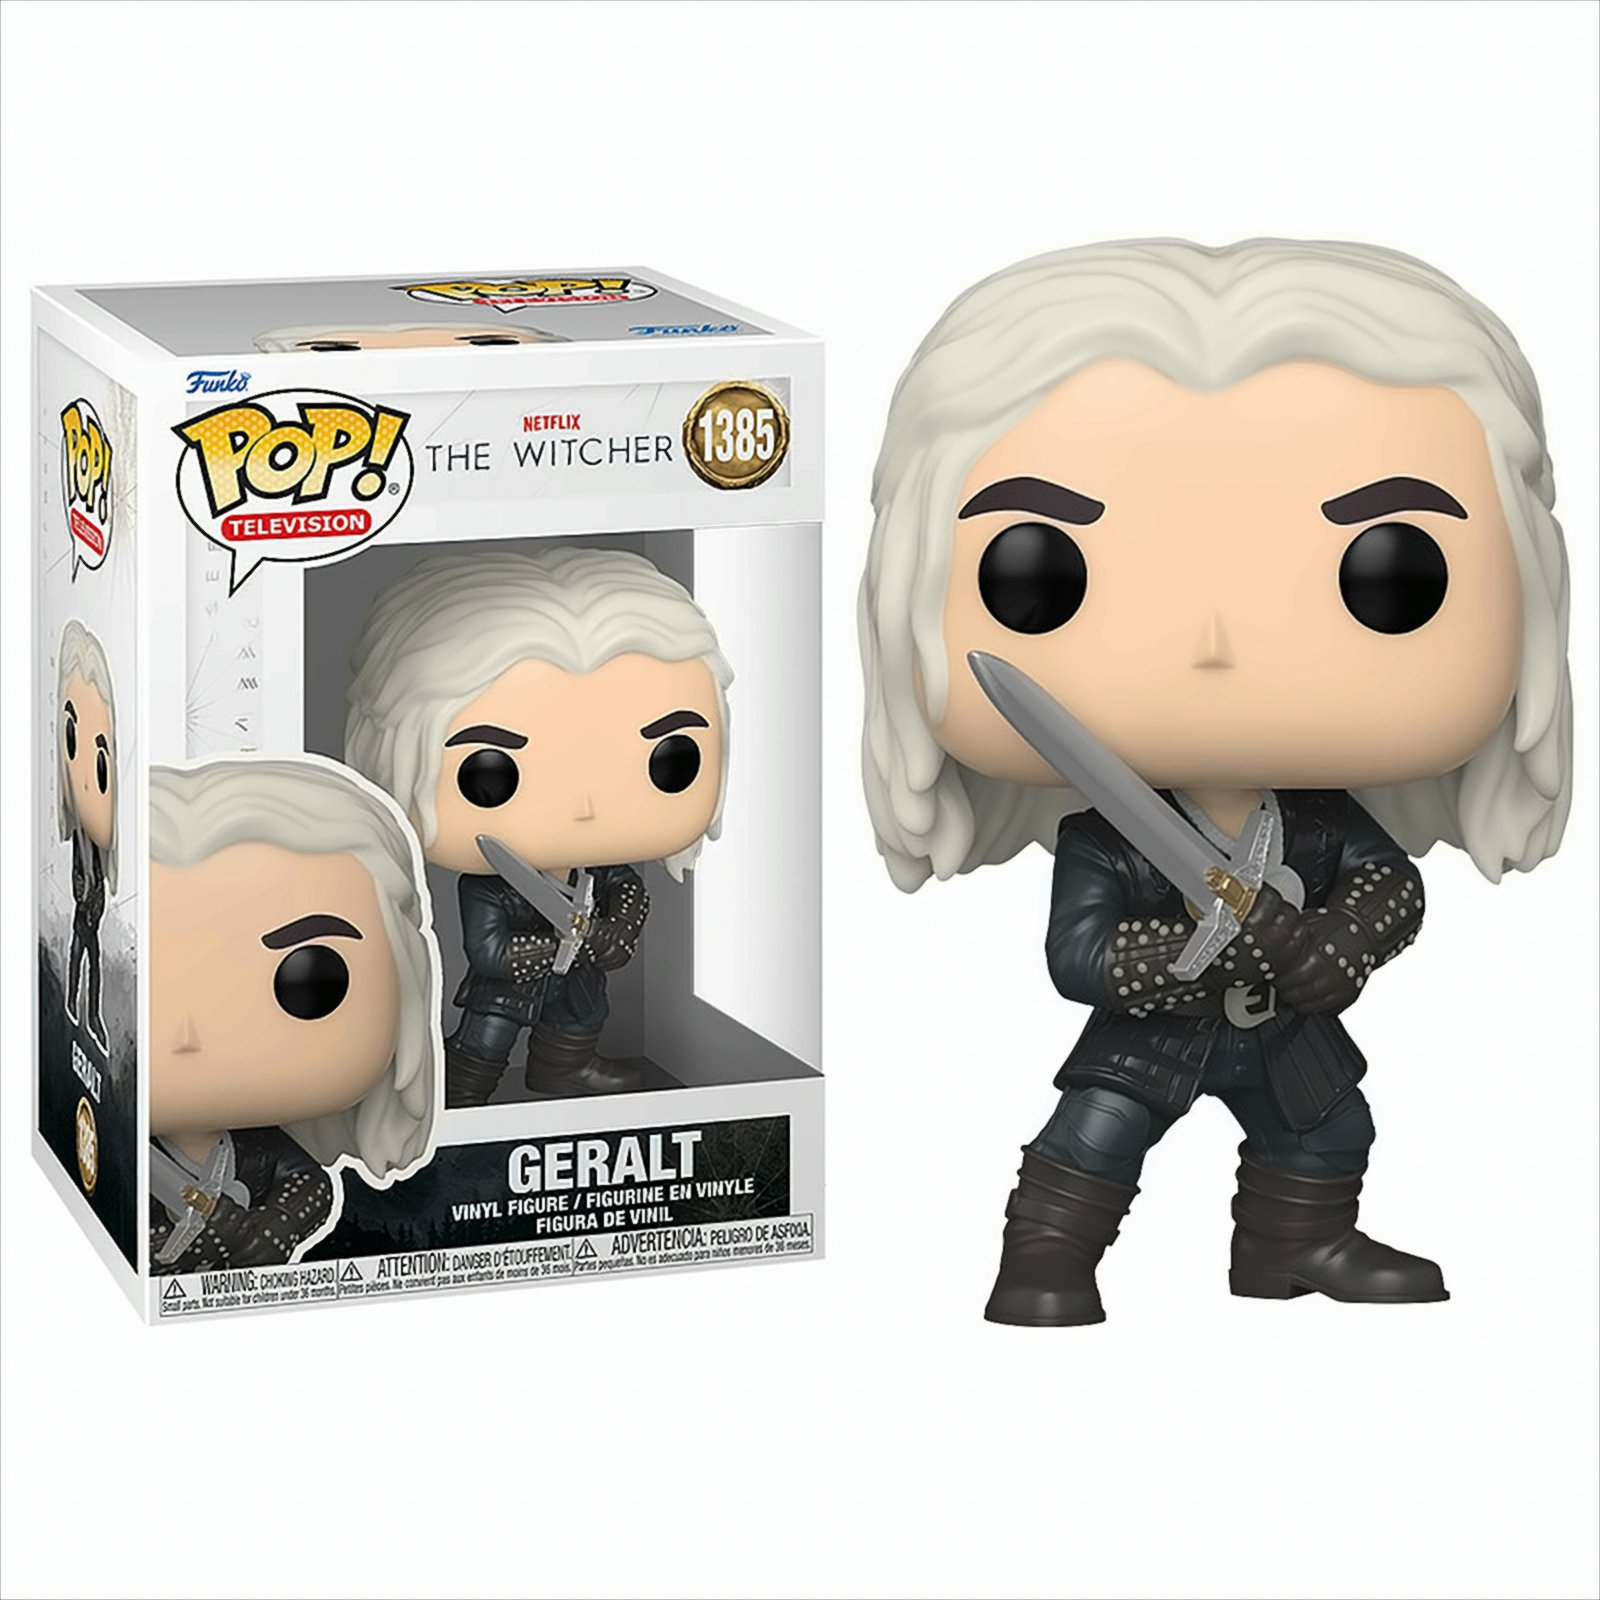 The Geralt NETFLIX - - - Witcher POP